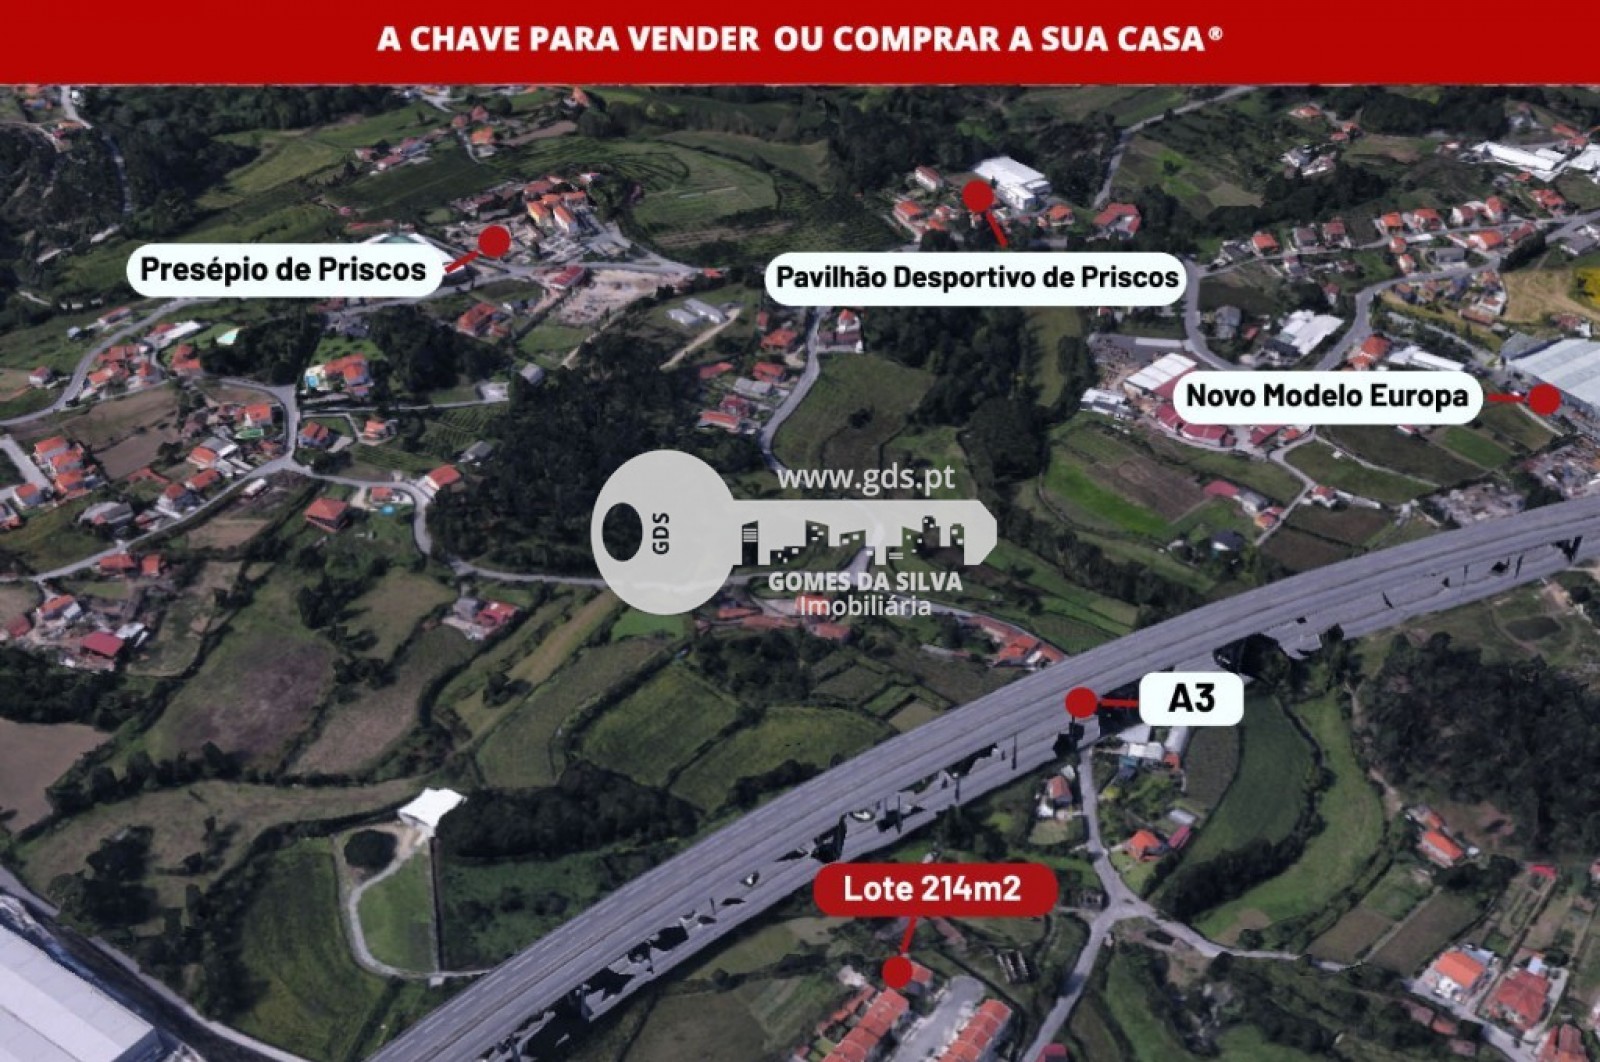 Terreno para Venda em Priscos, Braga, Braga - Imagem 11